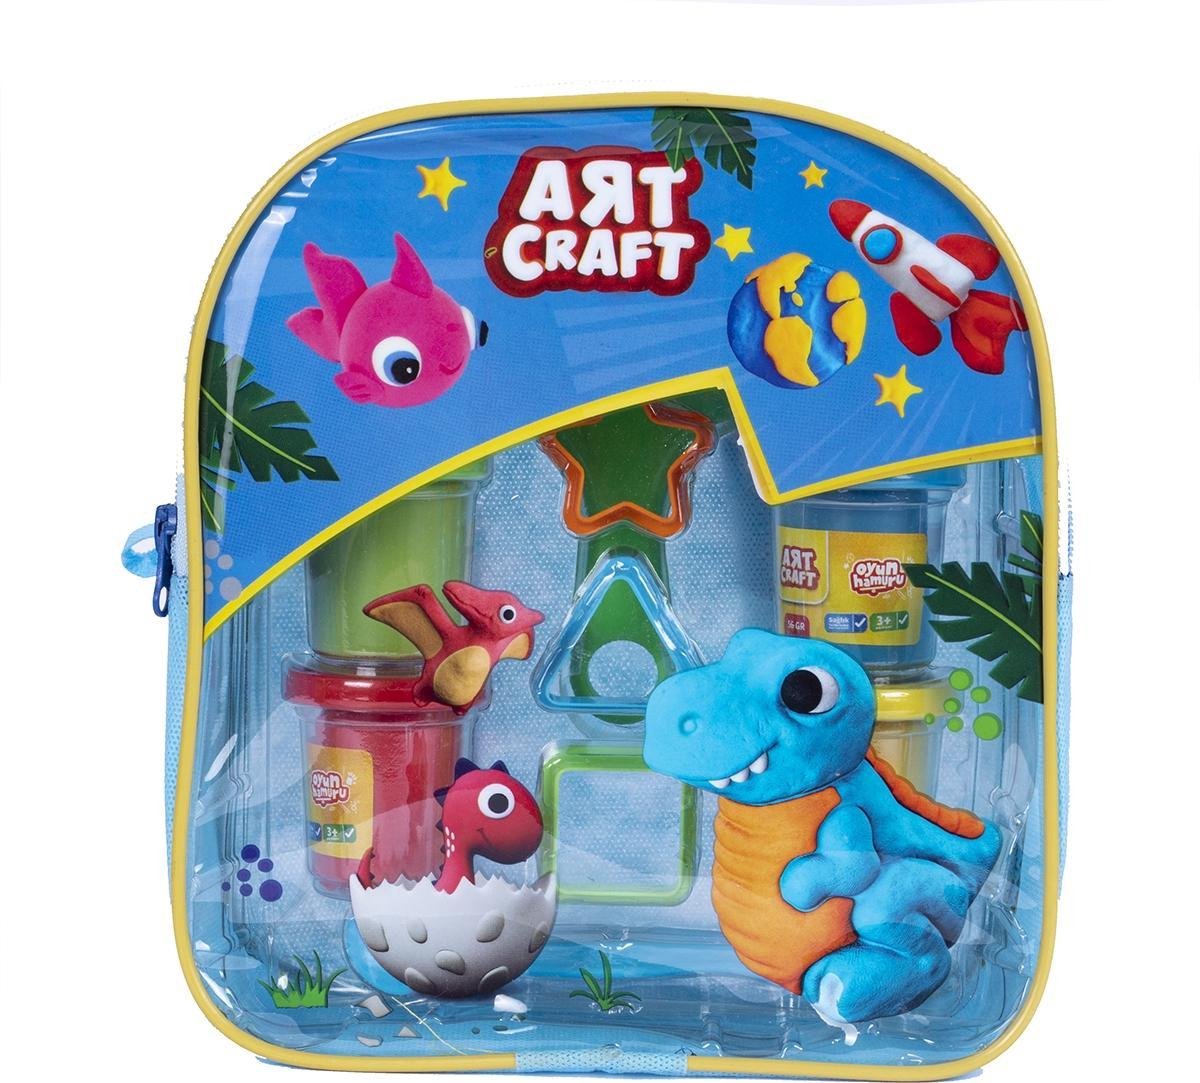 Dede Art Craft Play Dough Set, dinosaurus/eenhoorn tasje, blauw of roze, speelklei set, 4 verschillende kleuren Play Dough, verschillende speelvormpjes